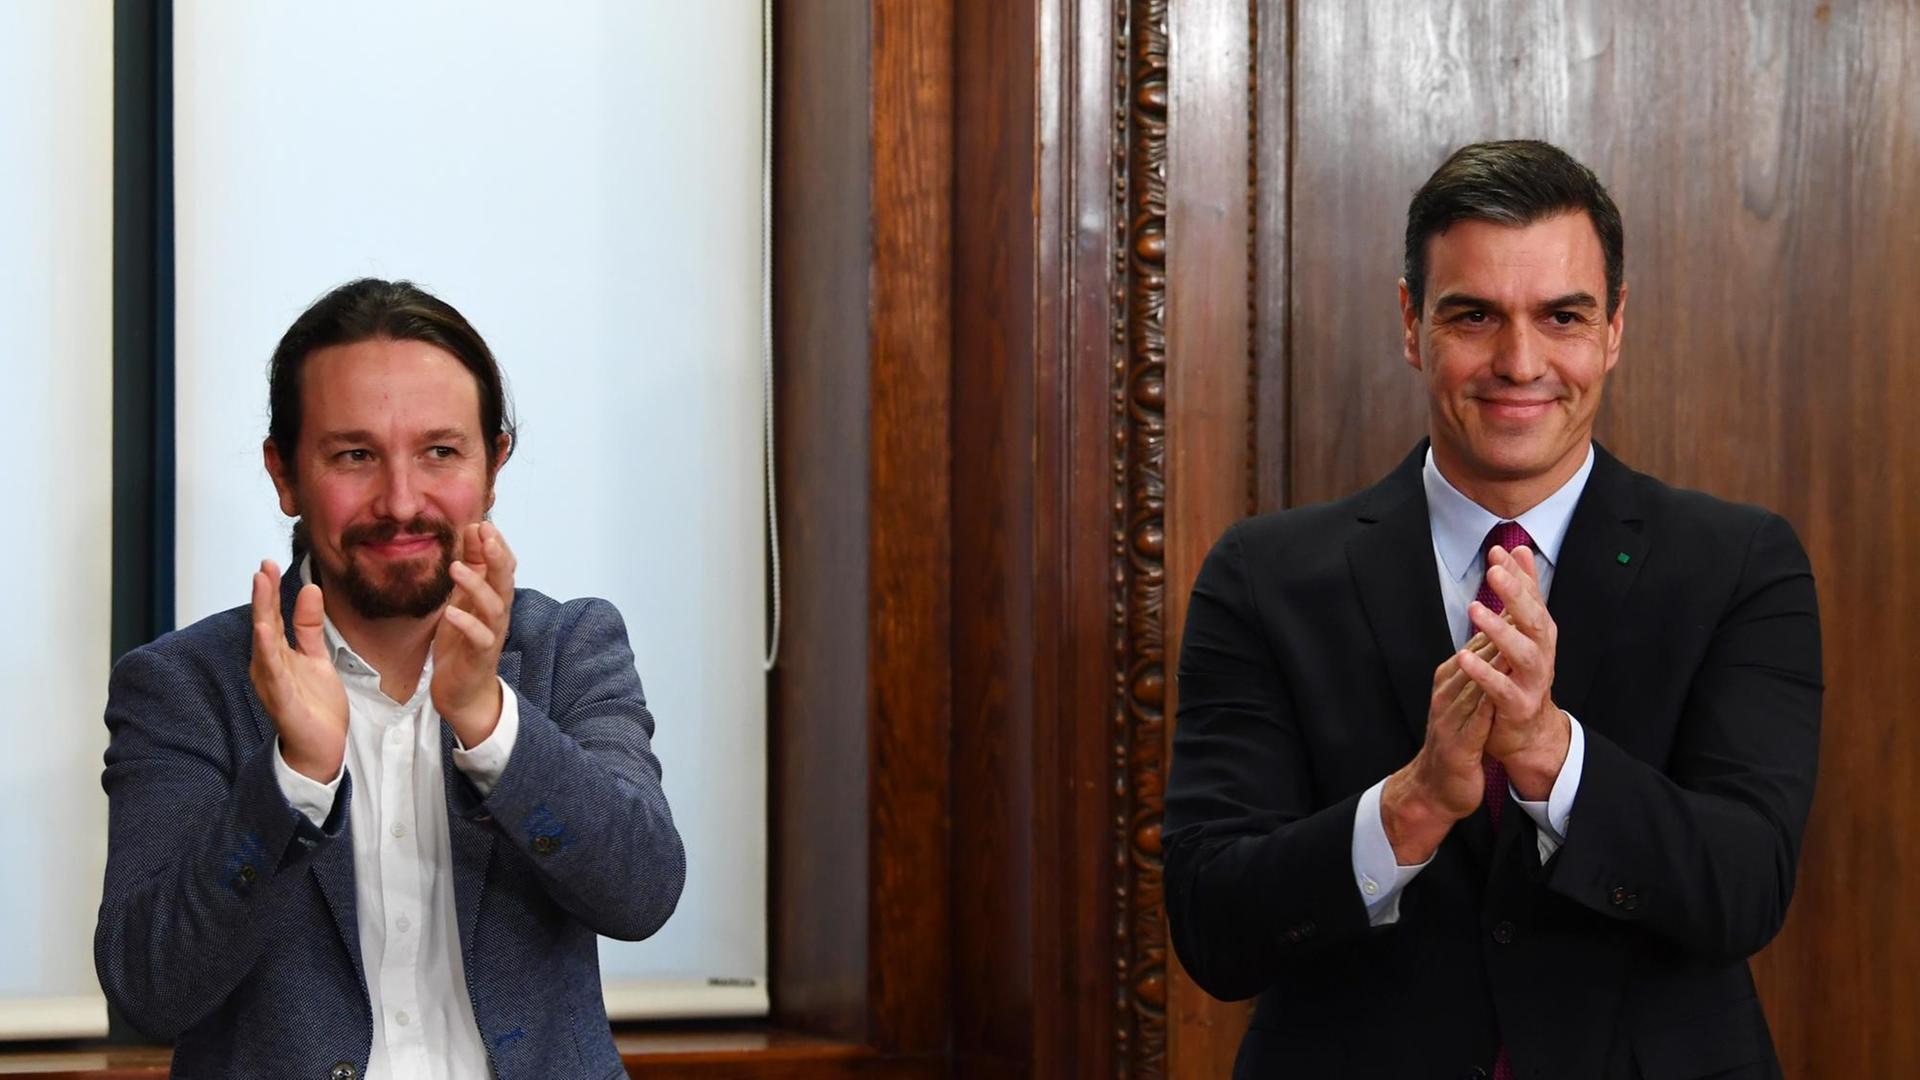 Der Vorsitzende der linken Podemos-Partei, Pablo Iglesias (L) und der spanische Ministerpräsident und Kandidat für die Wiederwahl, der Sozialist Pedro Sanchez, applaudieren nach der Unterzeichnung ihres Regierungsabkommens auf dem Kongress in Madrid am 30. Dezember 2019.